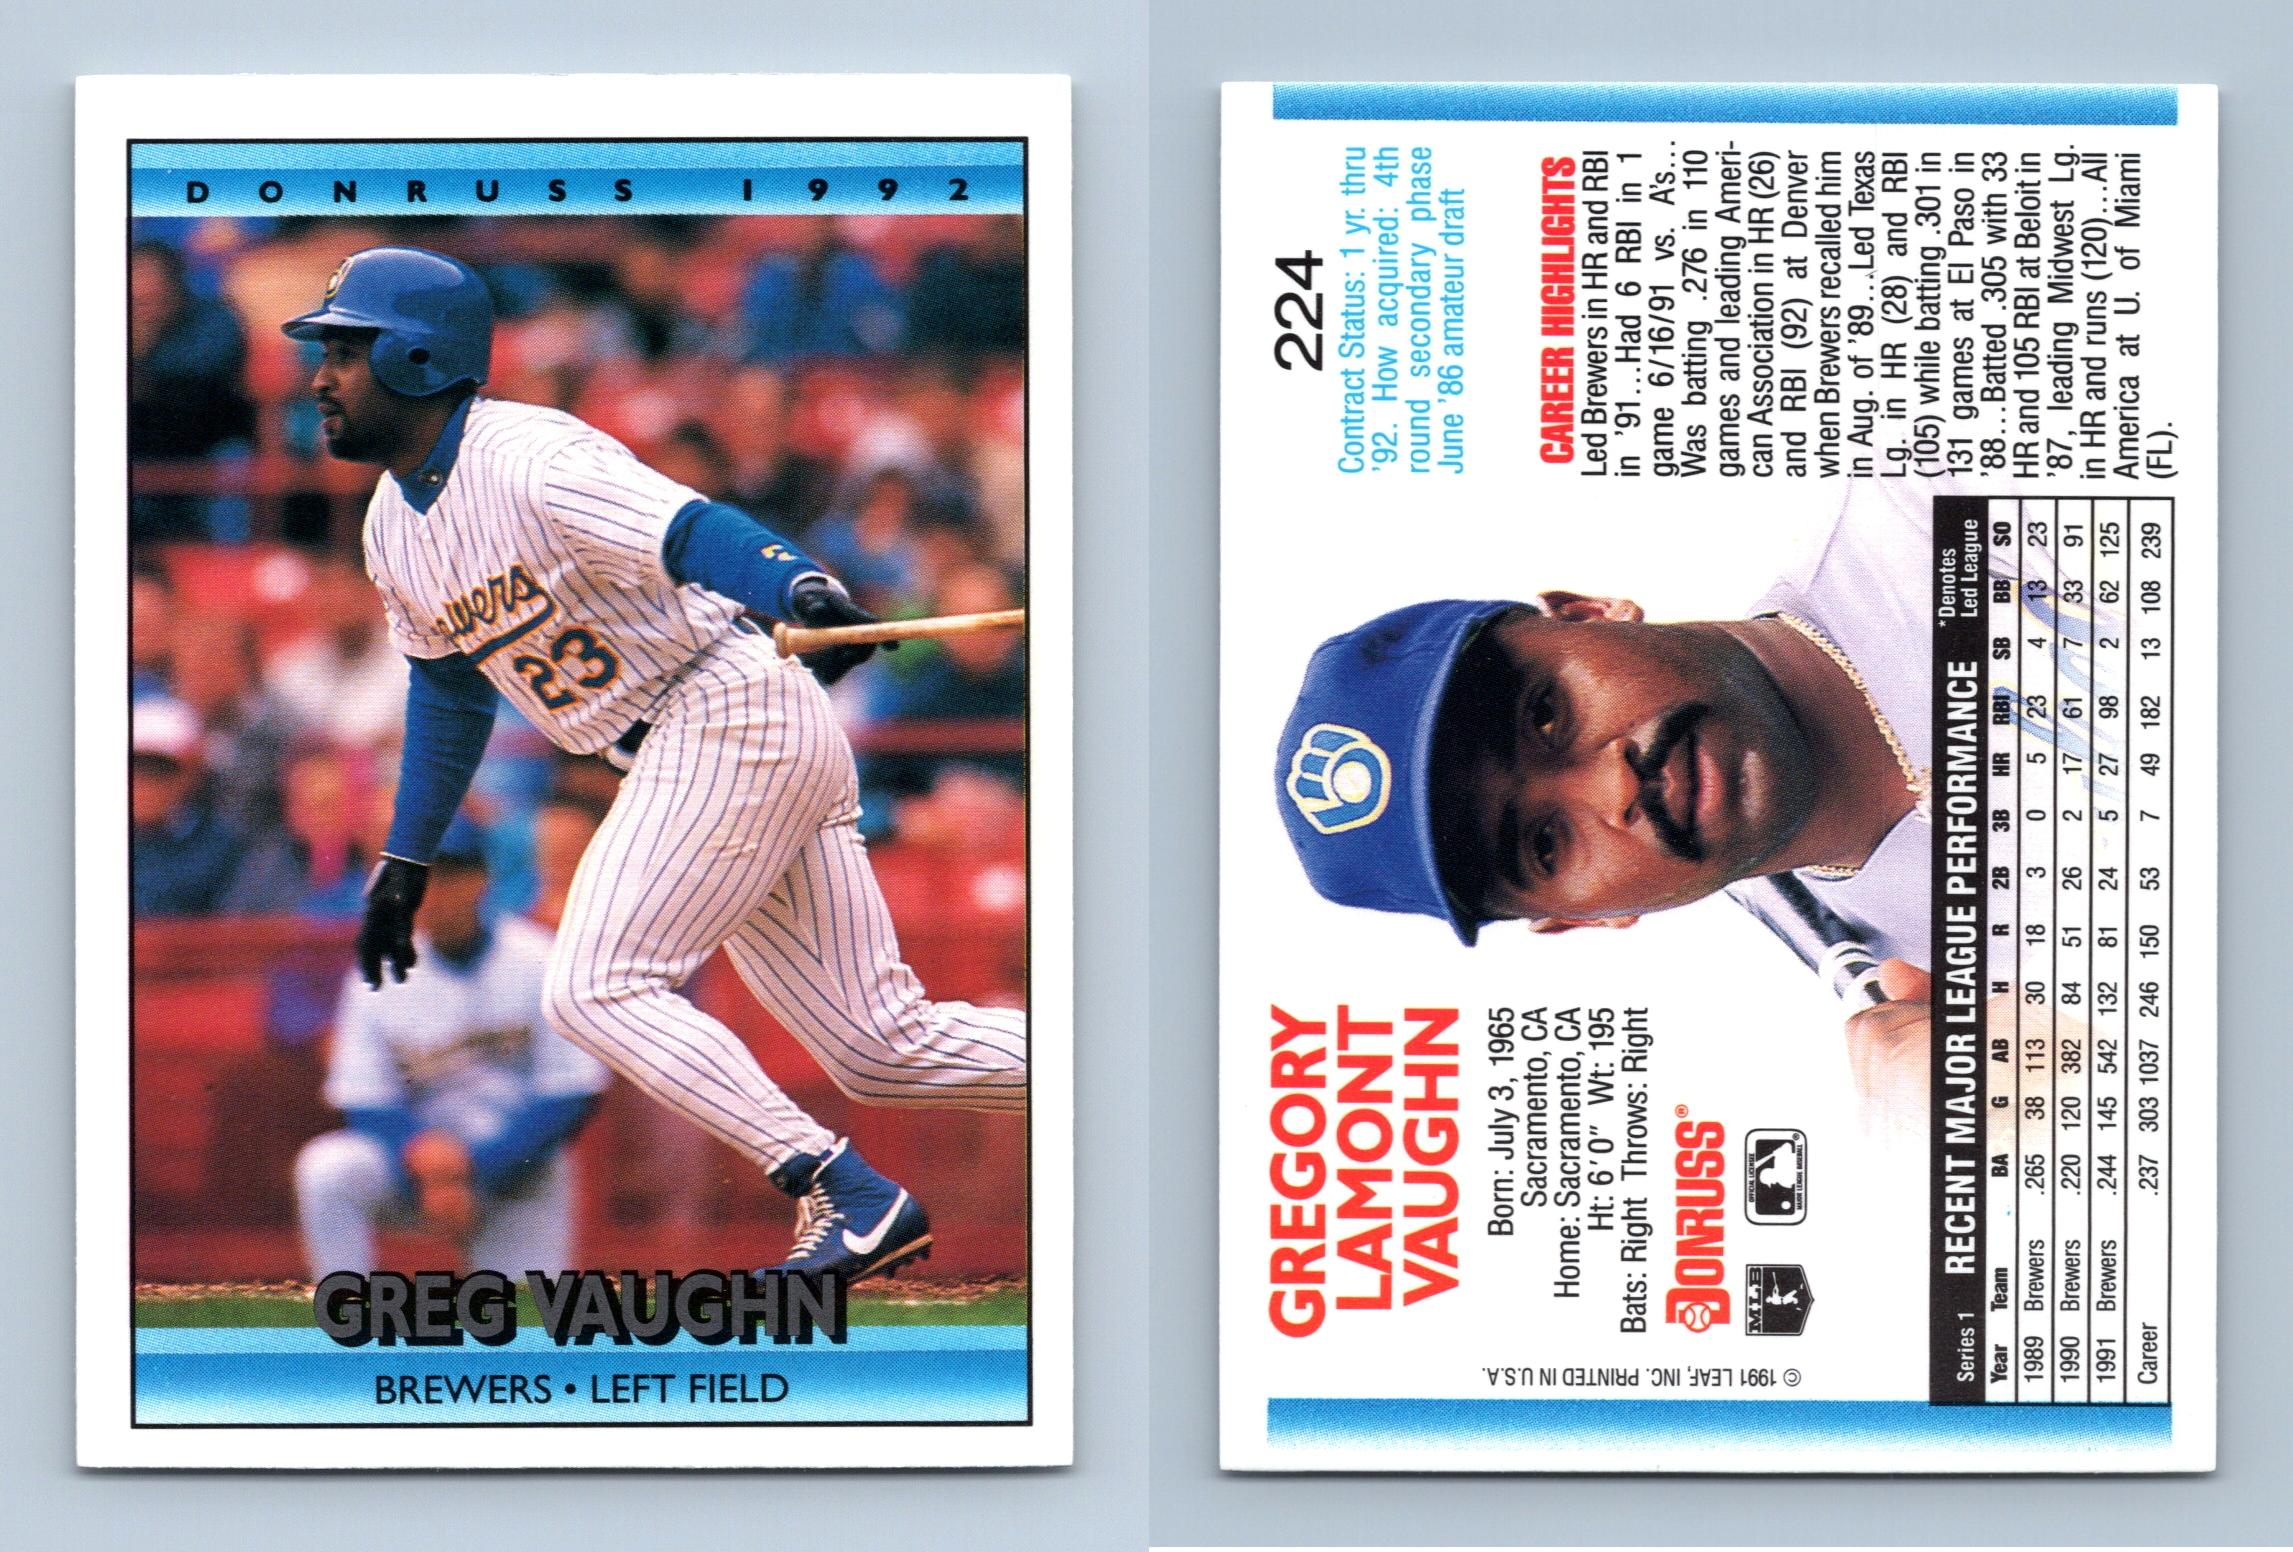 Greg Vaughn - Brewers #224 Donruss 1992 Baseball Trading Card